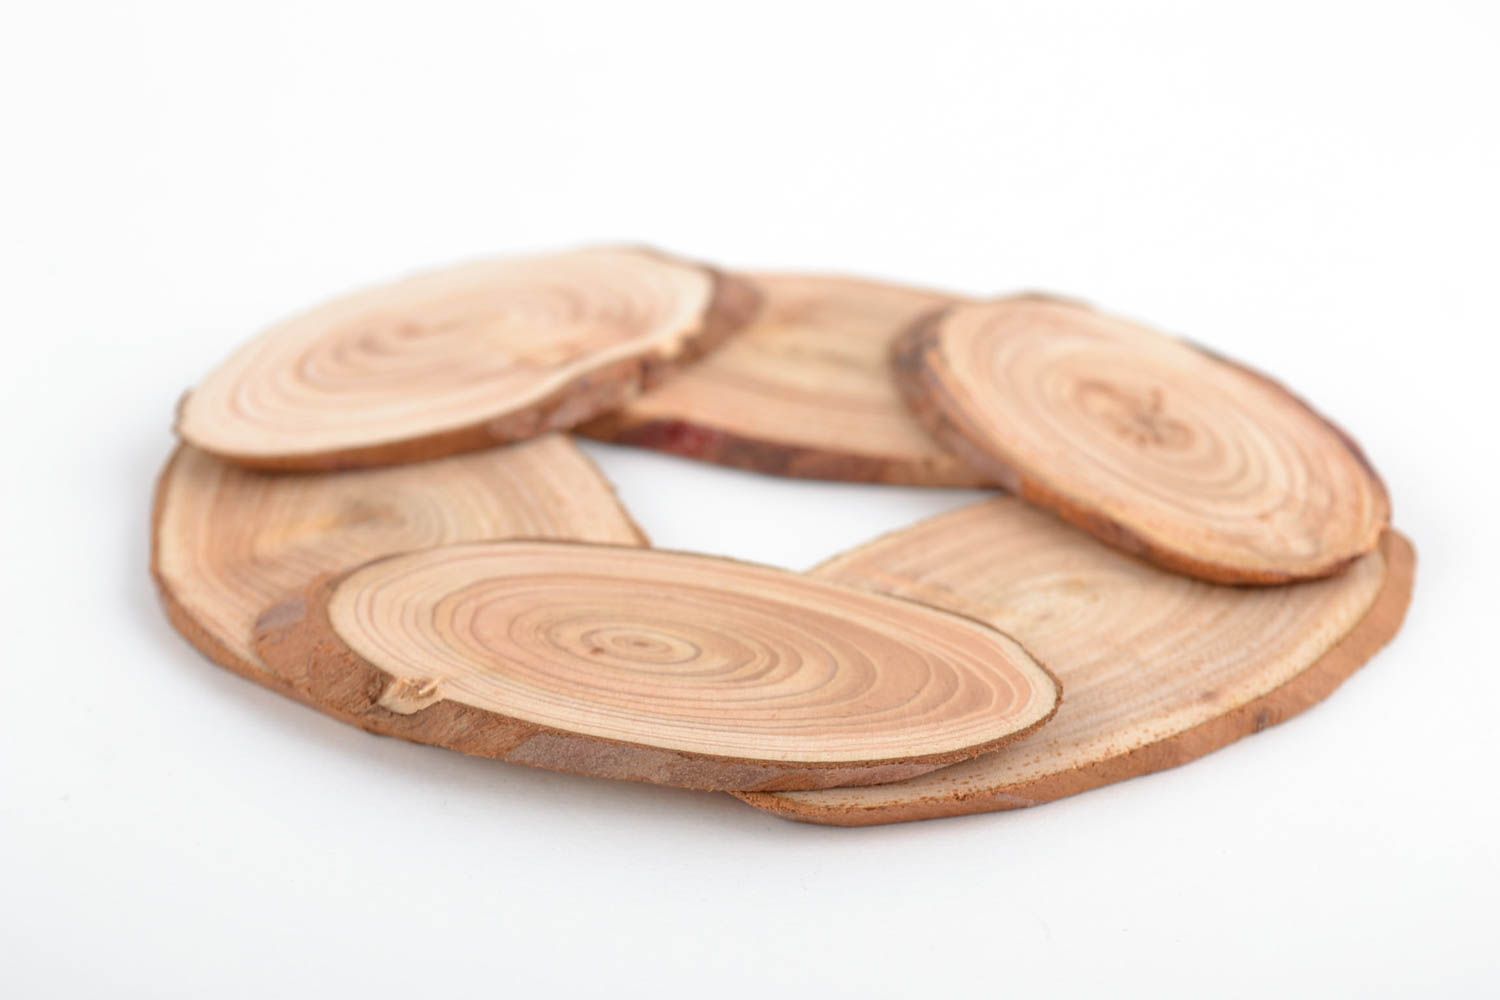 Dessous de plat en bois design - So Wood